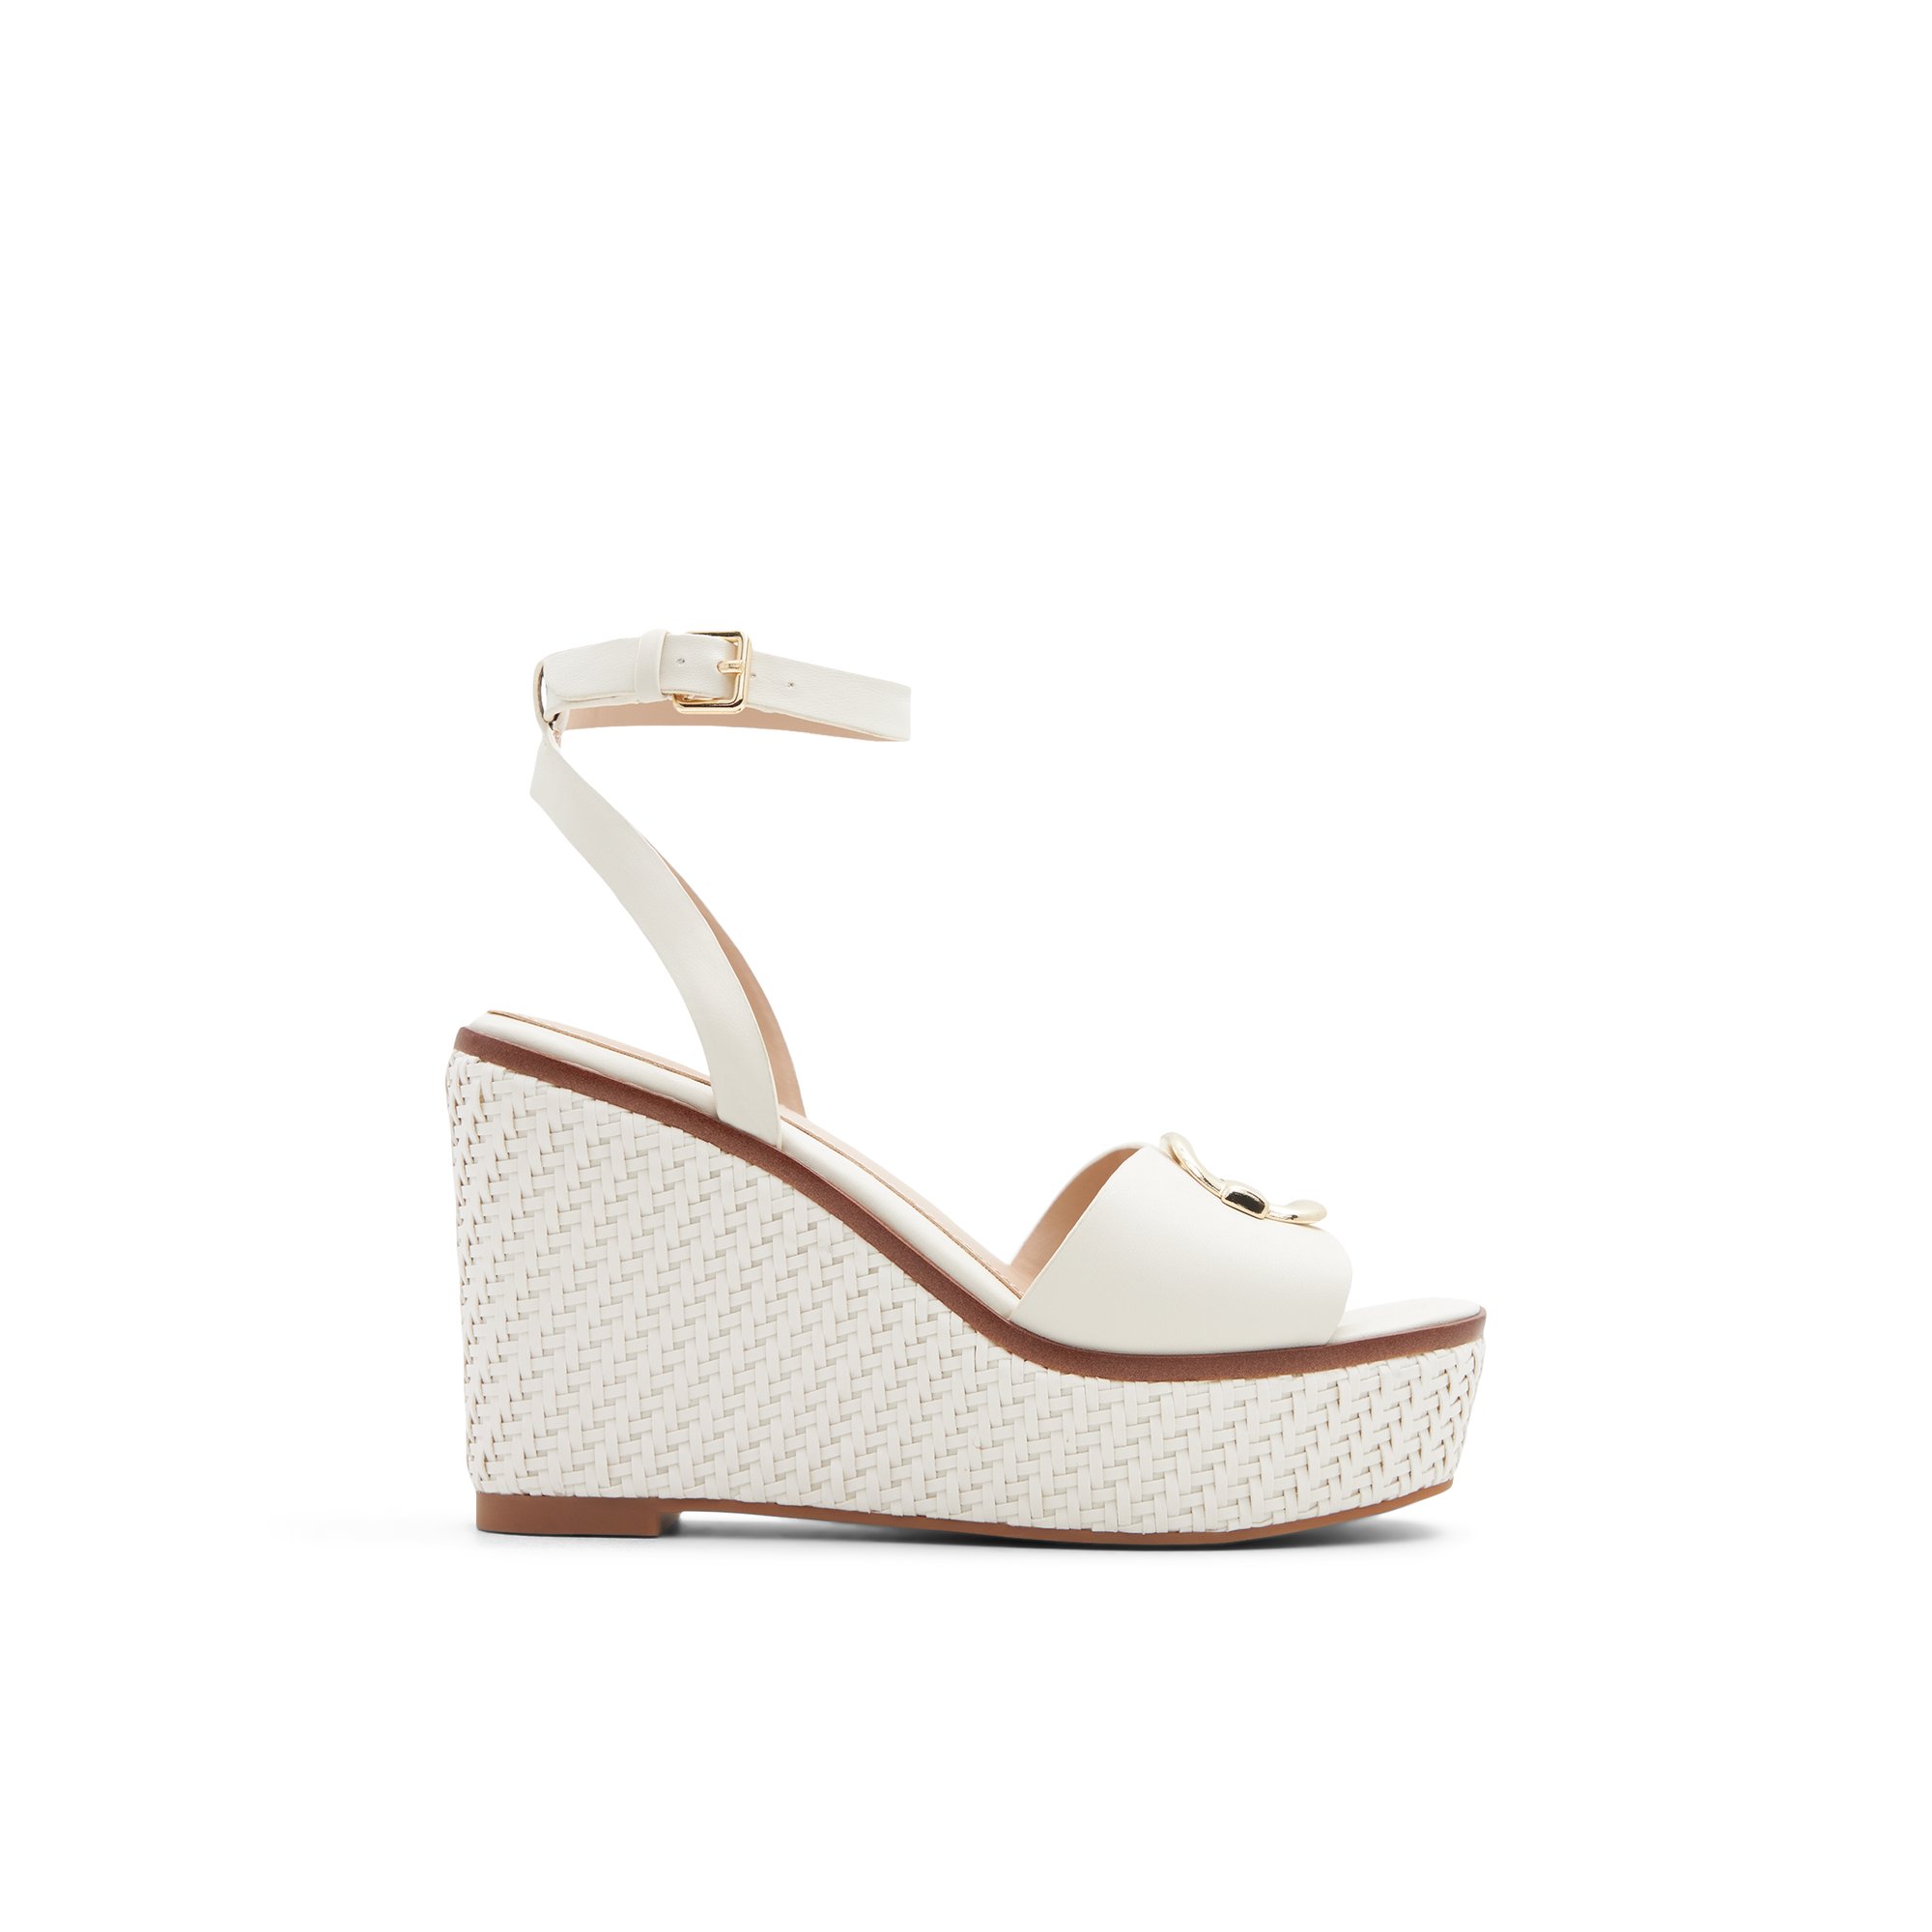 ALDO Carrabriria - Women's Wedge Sandals - White